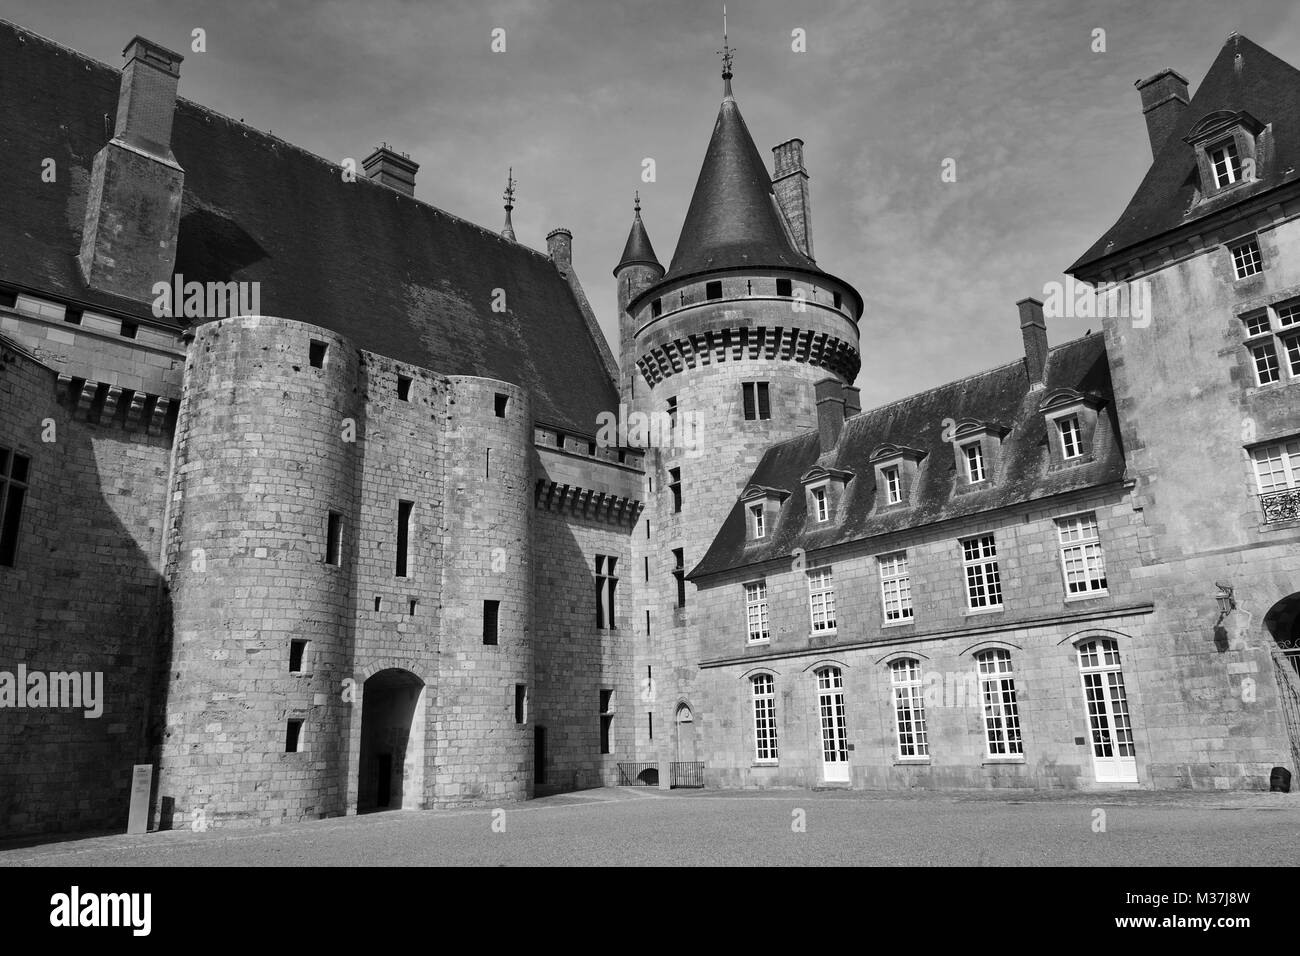 La cour intérieure du château de Sully à Sully-sur-Loire, France Banque D'Images